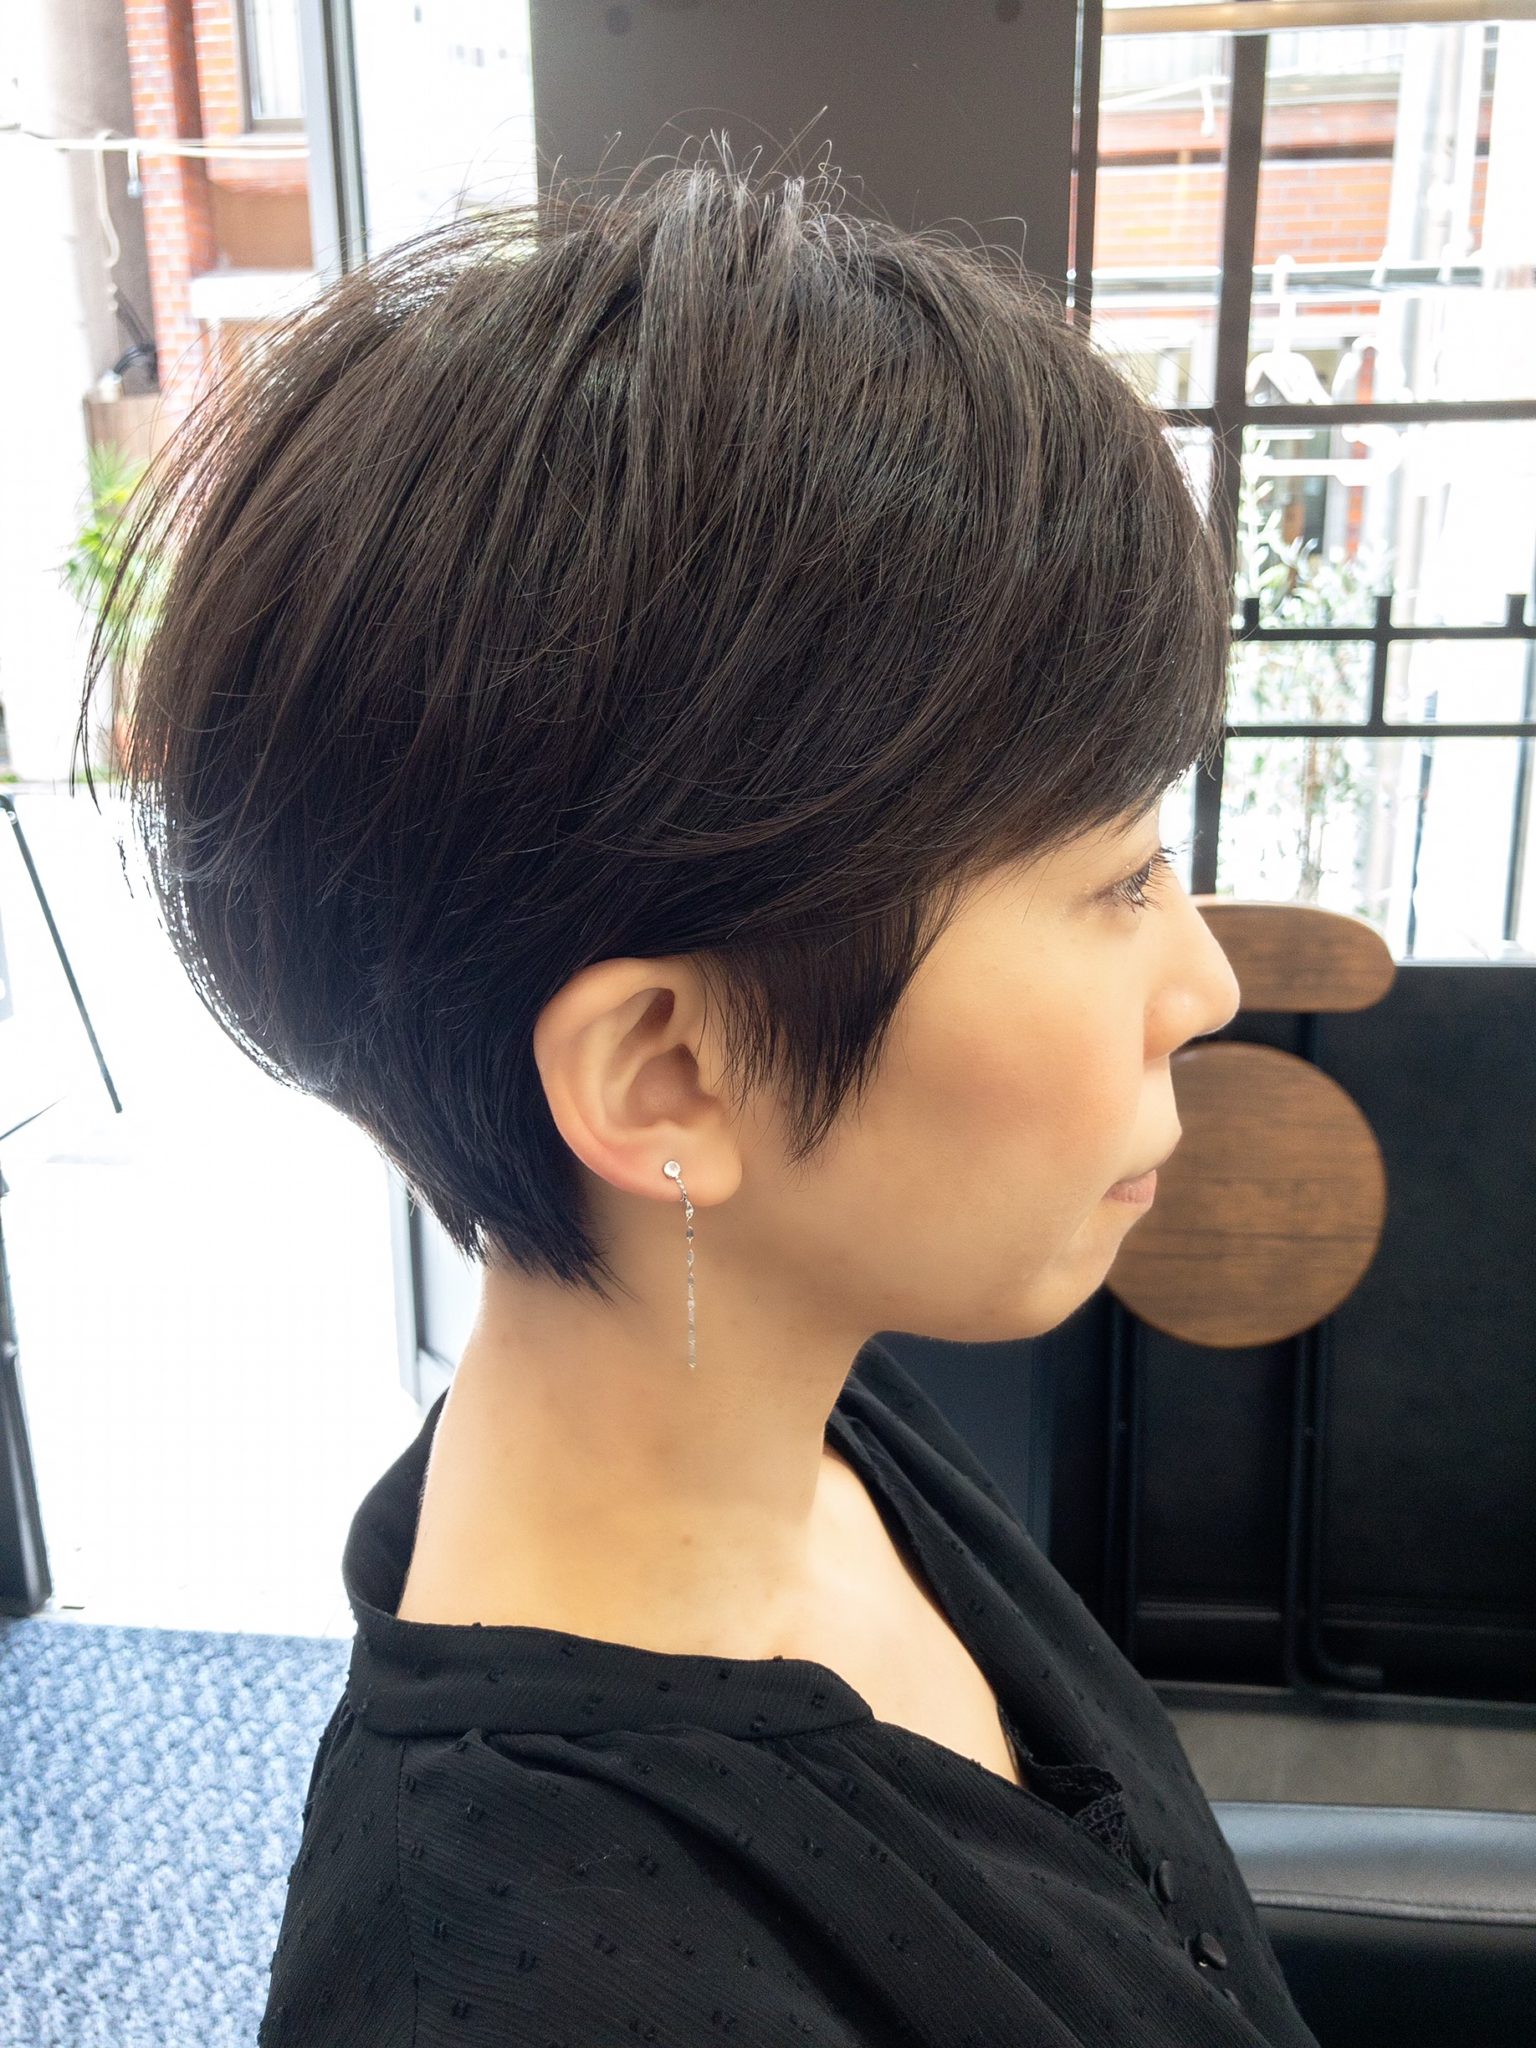 サイドの毛が膨らむショートヘアに2WAYなお勧めショートスタイル 阿佐ヶ谷でショートヘアに特化した美容師 石井さんのショートヘアページ